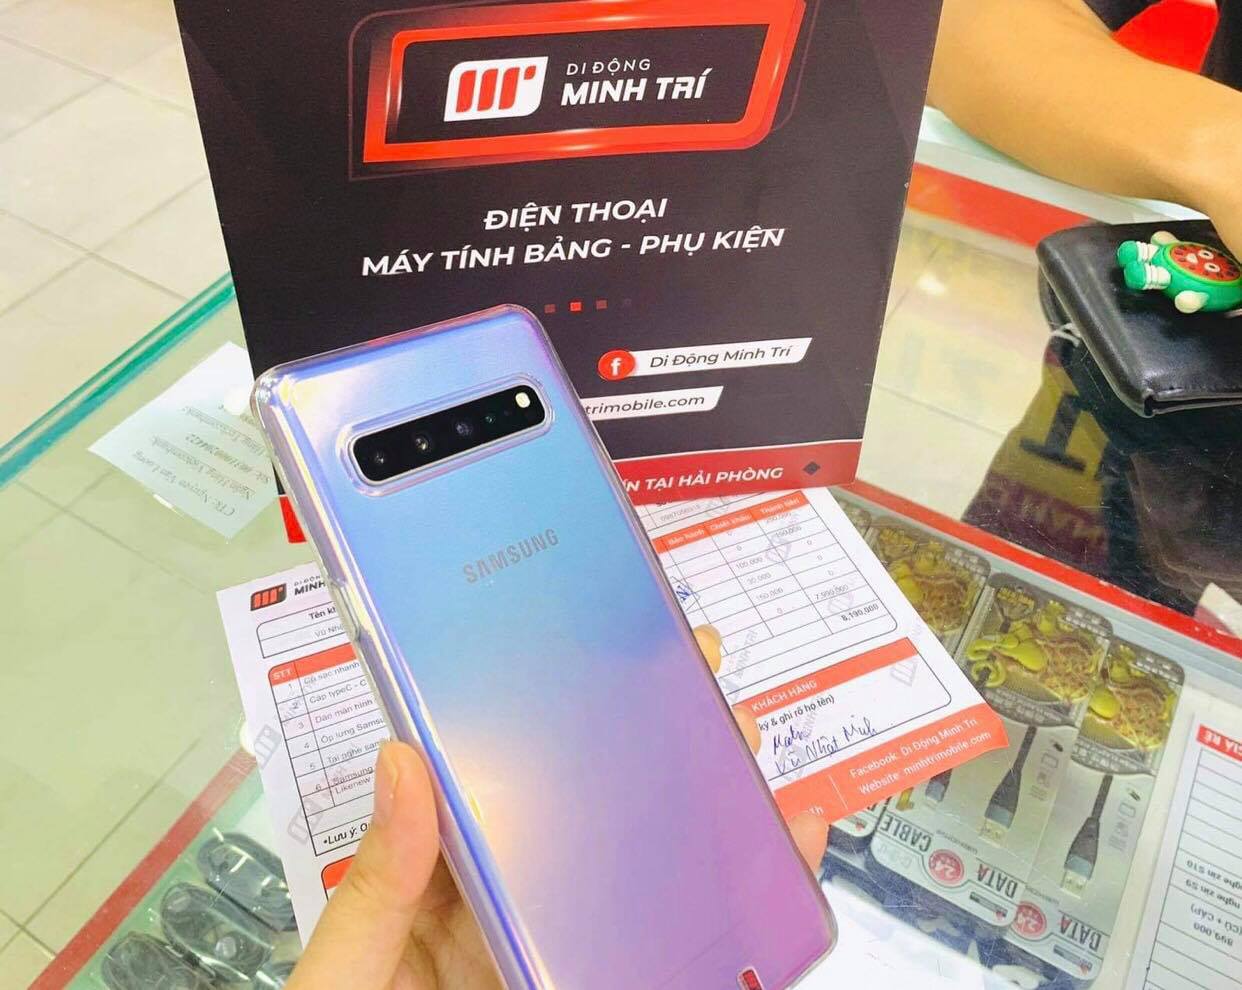 Khách hàng chọn mua Samsung S10 5G tại Di Động Minh Trí